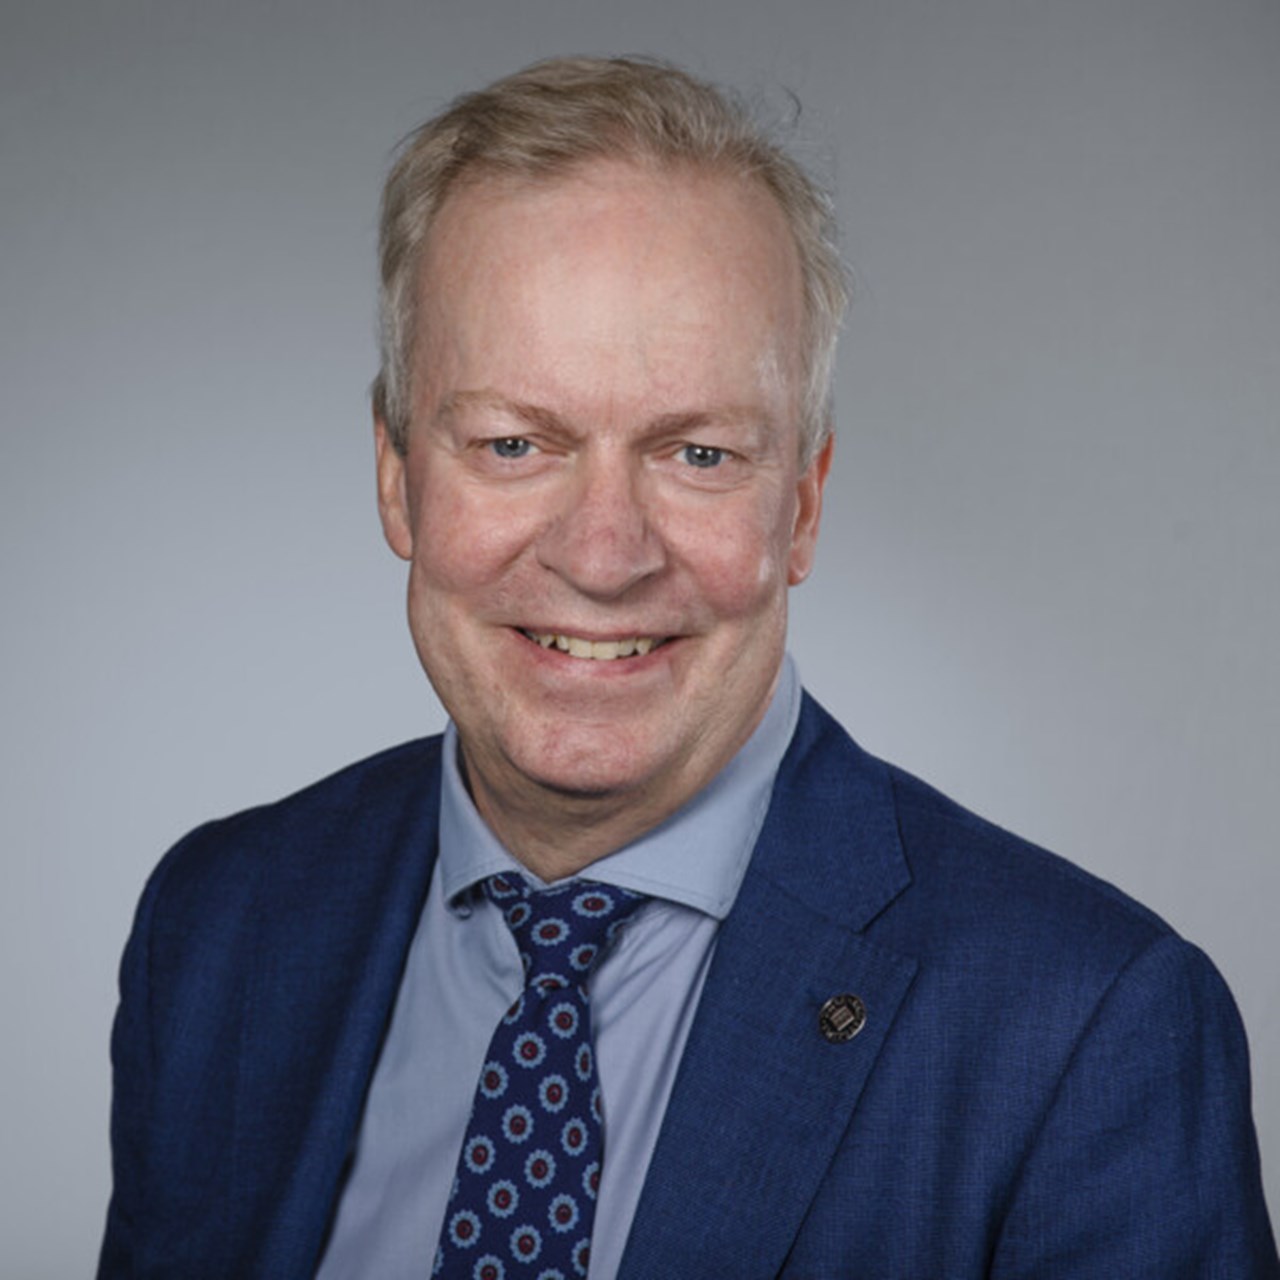 Porträtt på Per Ragnarsson, biträdande universitetsdirektör vid Umeå unviersitet.